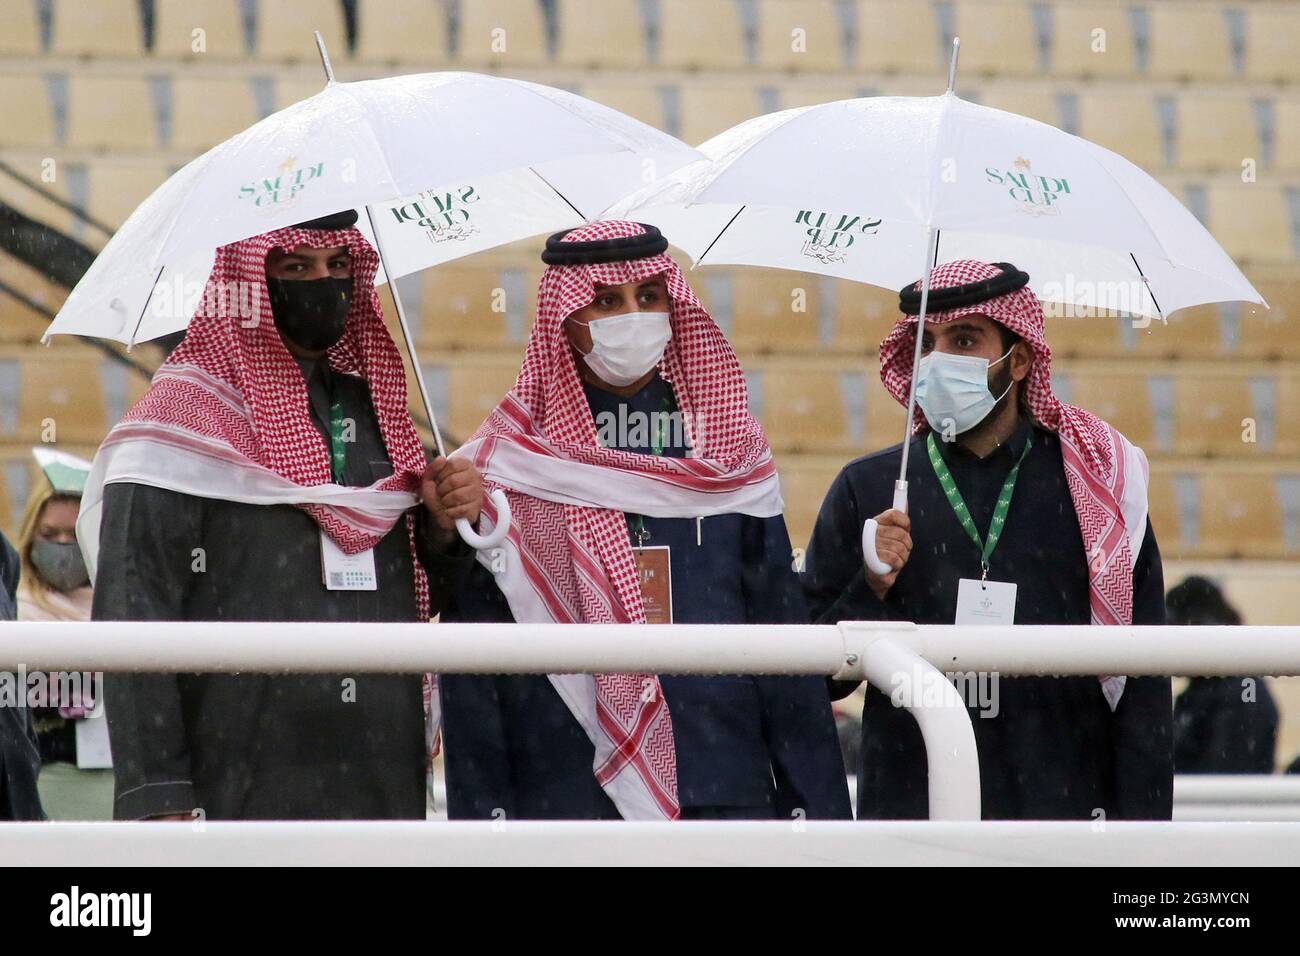 20.02.2021, Riad, Riad, Saudi-Arabien - Arabische Männer tragen Mund-Nase-Schutz in Zeiten der Corona-Pandemie. 00S210220D1083CAROEX.JPG [MODELLVERSION: NEIN Stockfoto